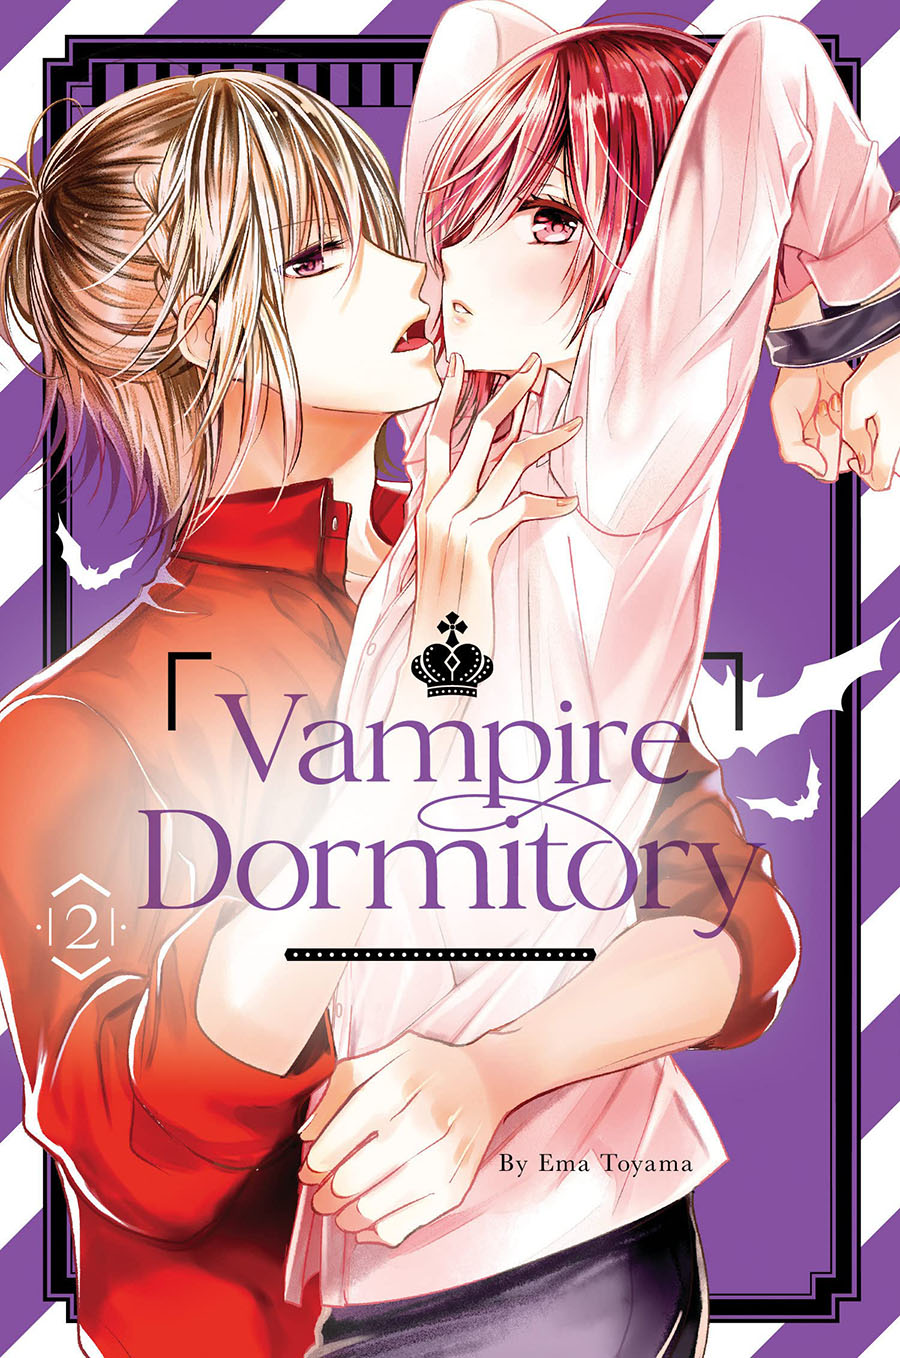 Vampire Dormitory Vol 2 GN